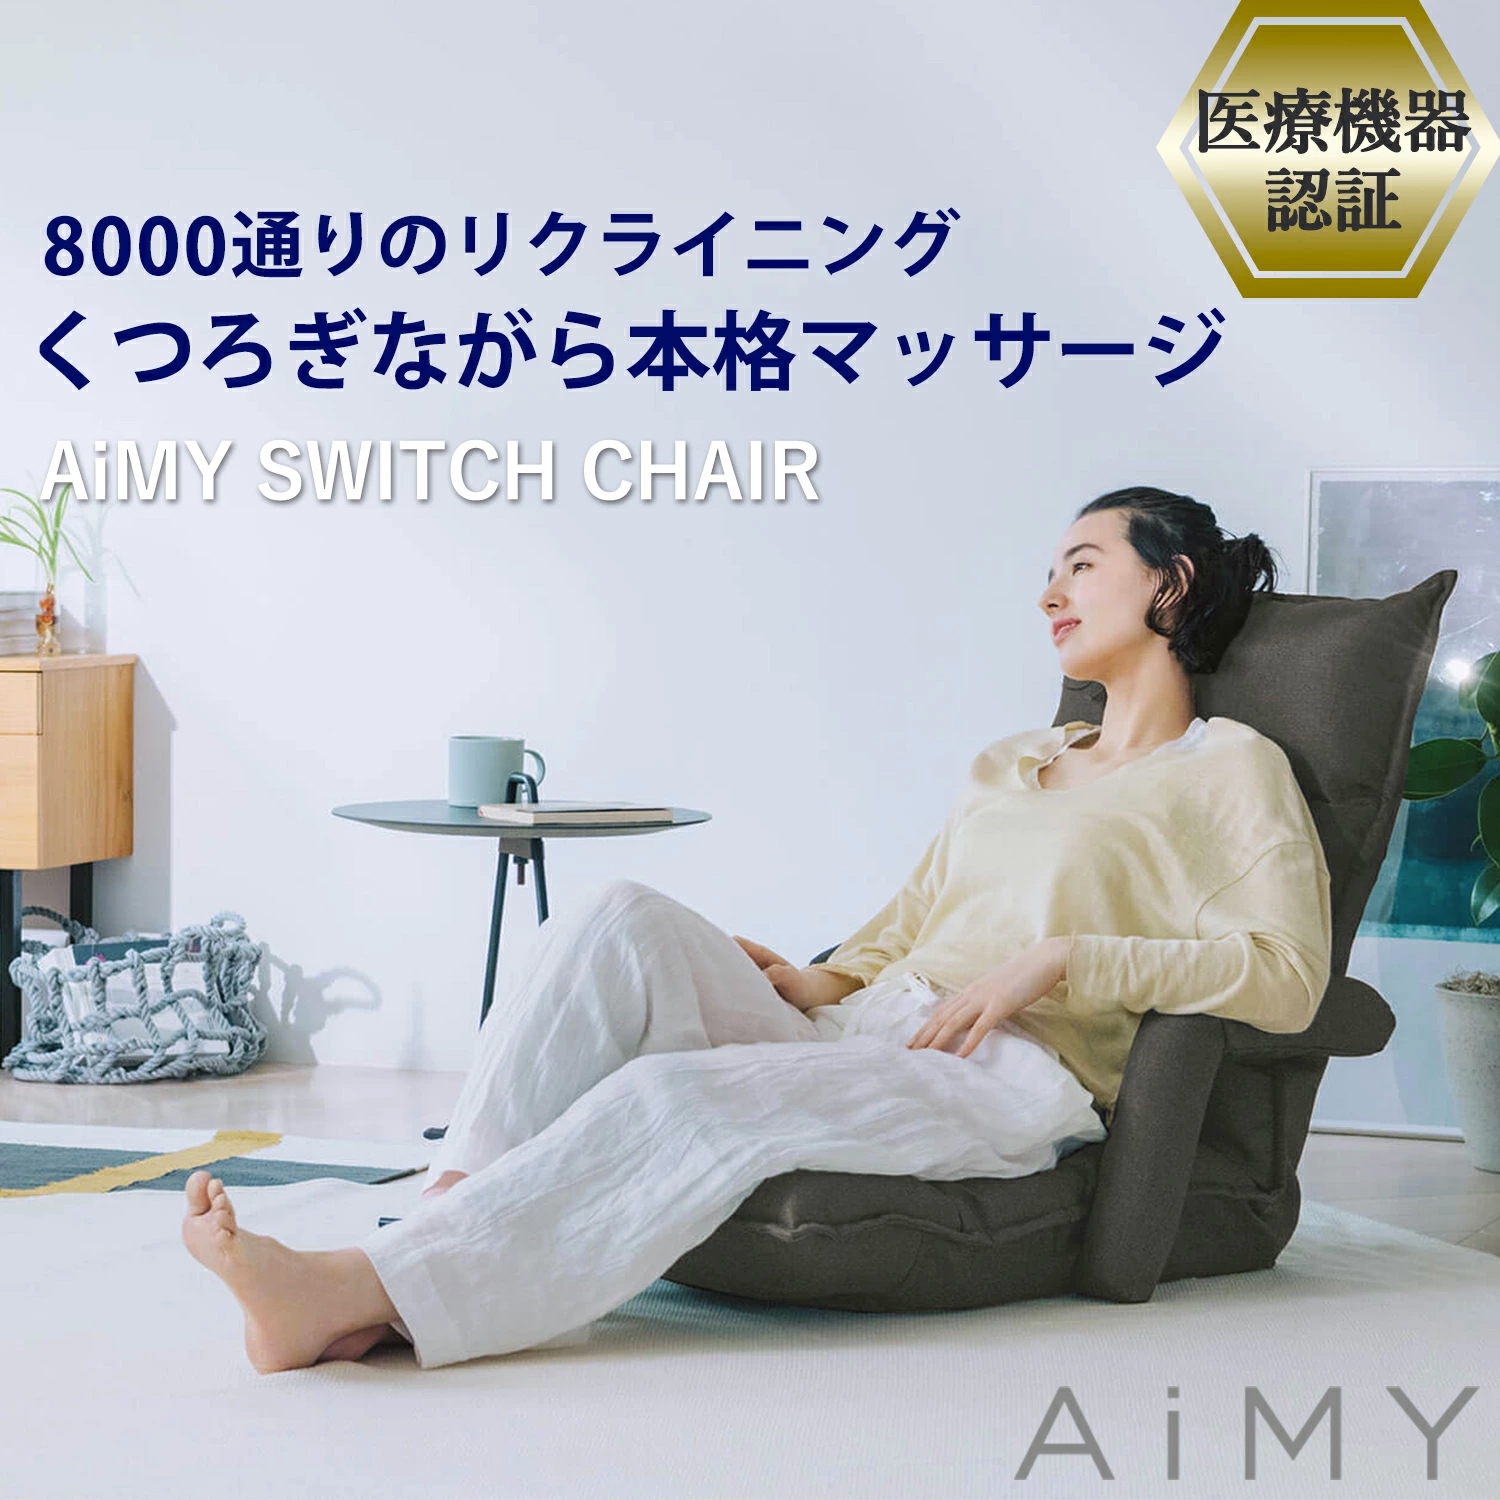 AiMY Amy switch chair AIM-133 massage chair "zaisu" seat armrest attaching stylish compact reclining massage heater massager 